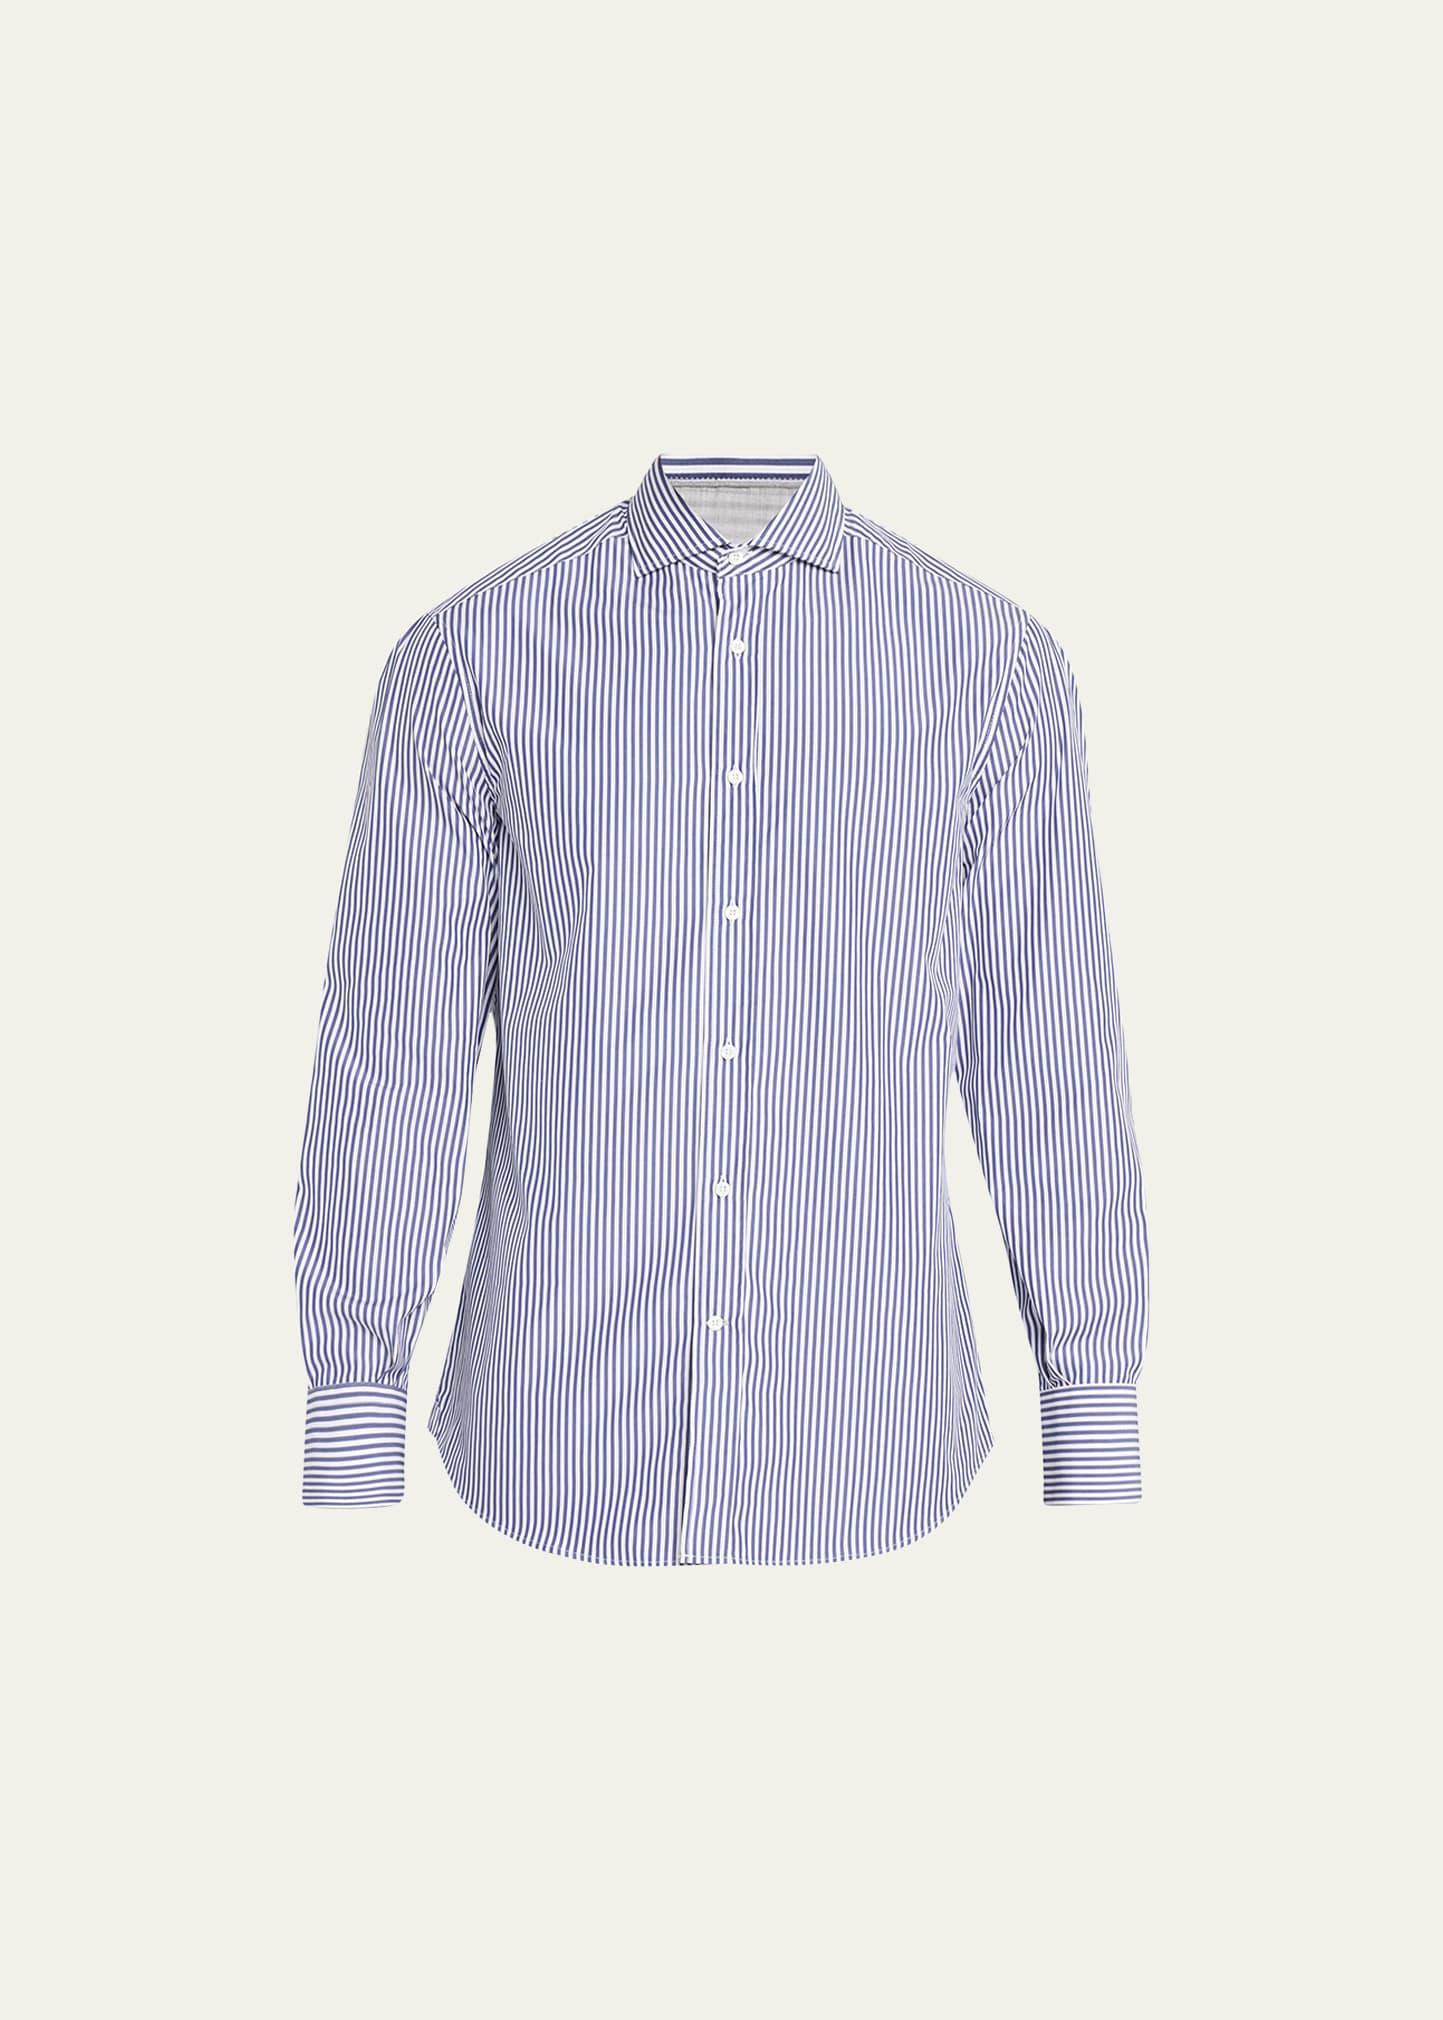 Brunello Cucinelli Men's Cotton Pinstripe Sport Shirt In C032 White Blue